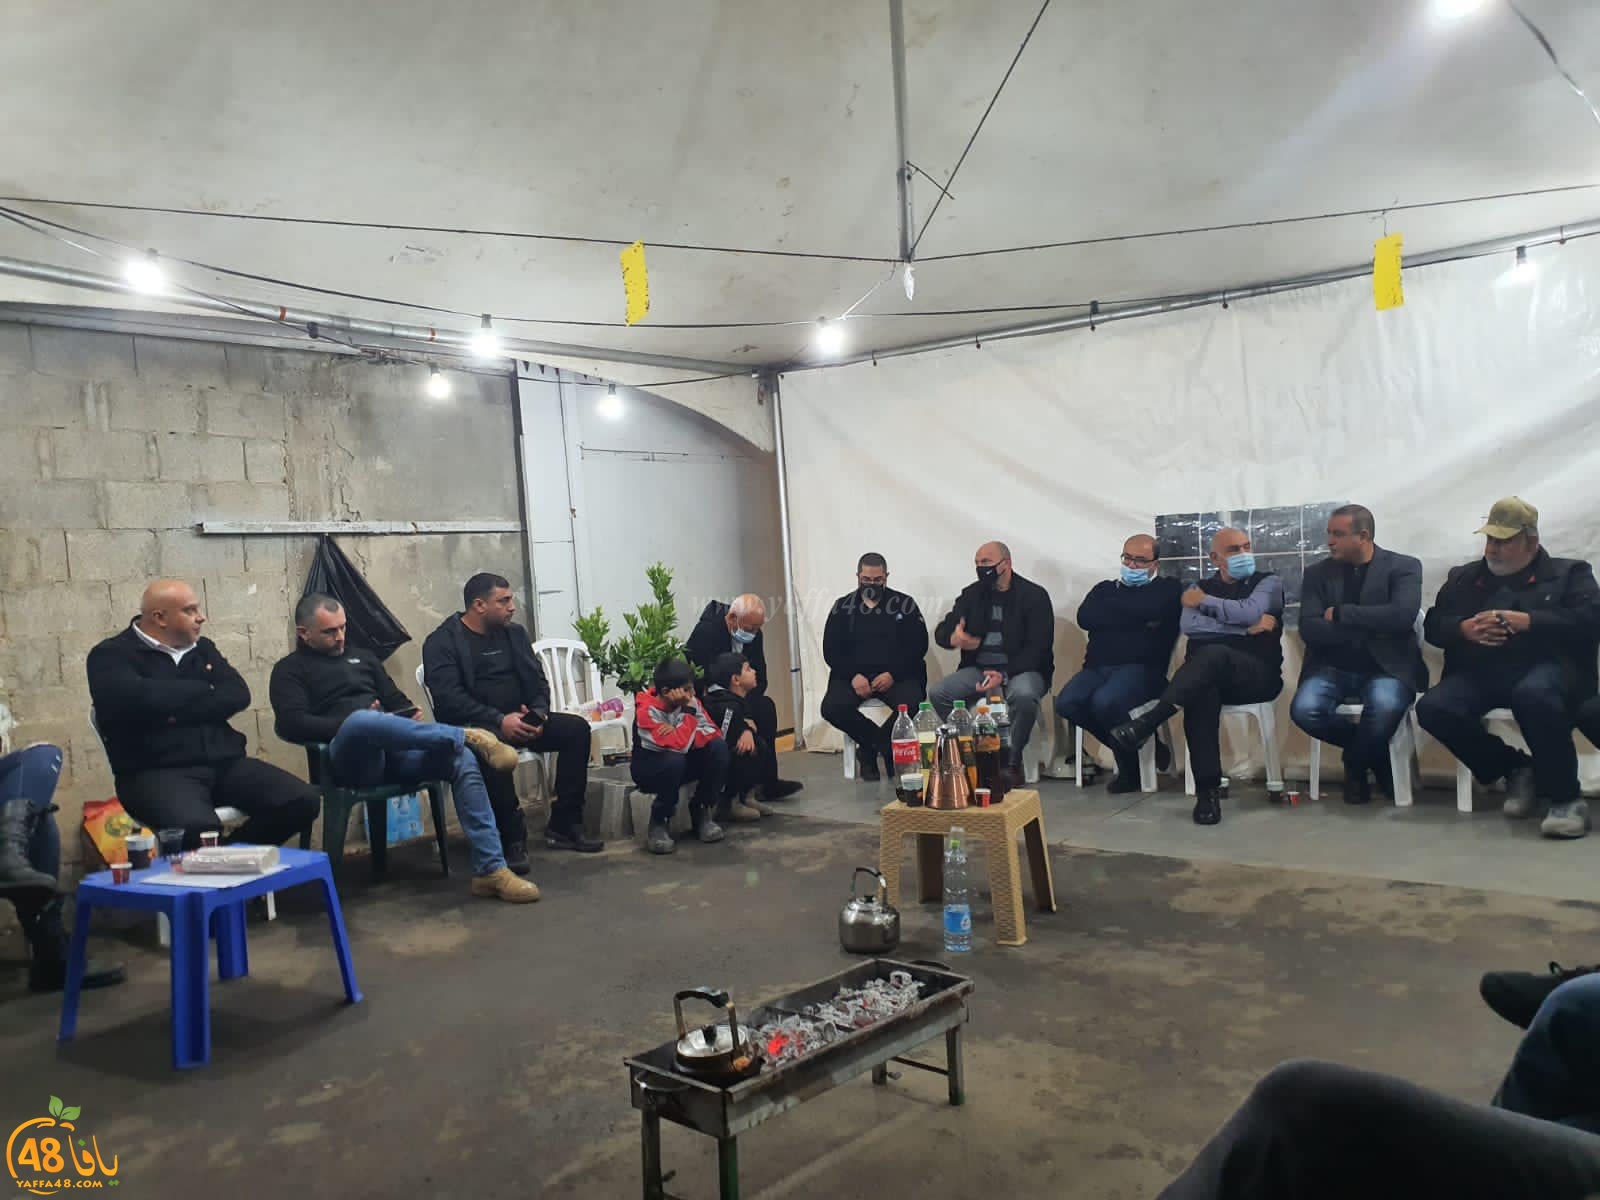  اللد: اجتماع موسّع في خيمة الاعتصام بحي شنير لبحث وقف هدم 40 بيتاً عربياً 